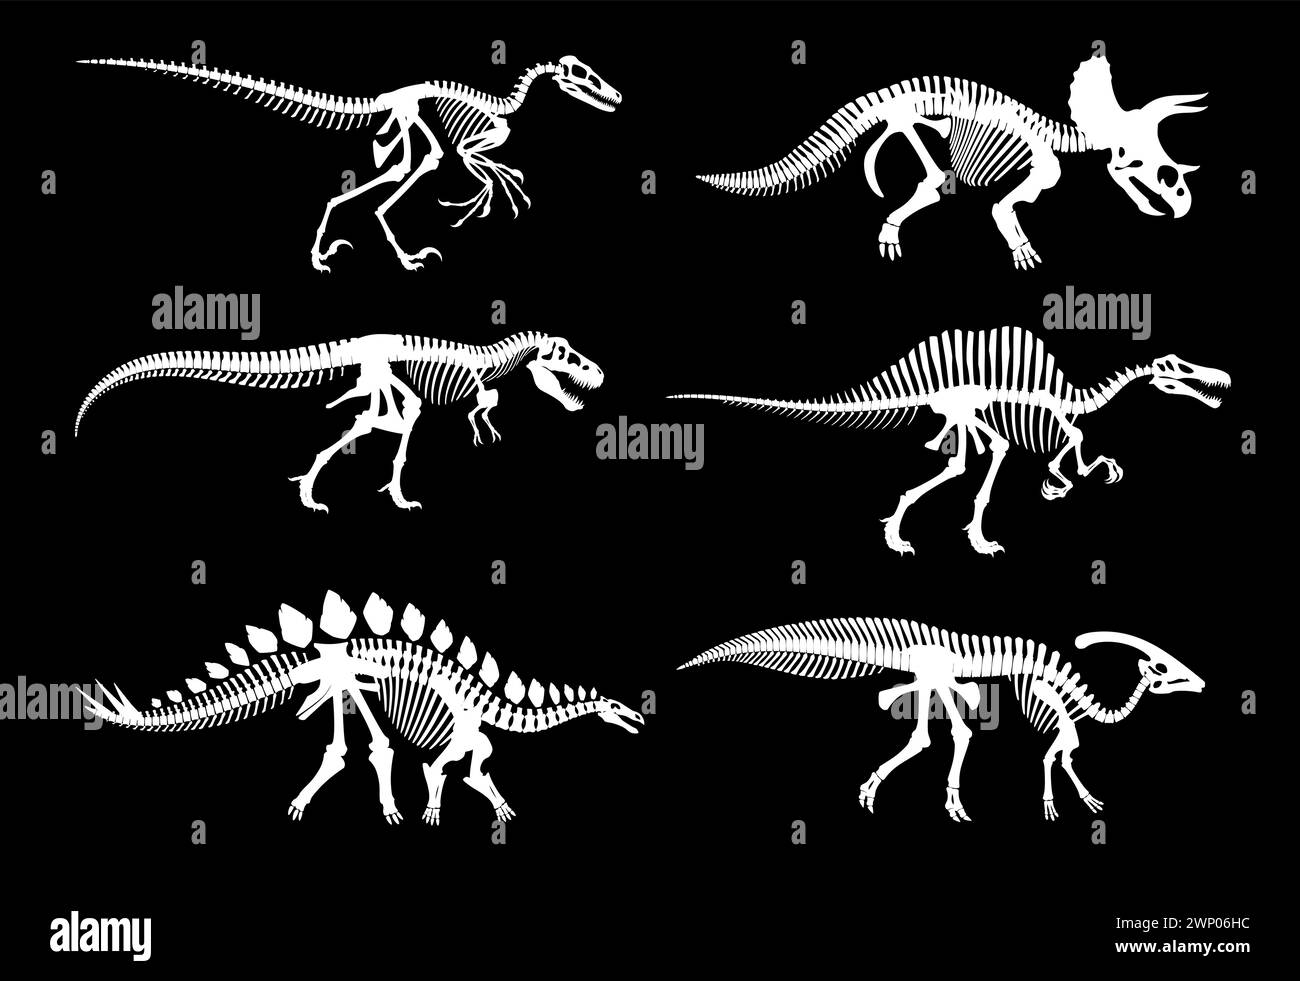 Squelettes fossiles de dinosaures et empreintes jurassiques d'os de dinosaures, silhouettes blanches vectorielles. Archéologie des dinosaures squelettes fossiles de reptile éteint, T-rex t Illustration de Vecteur